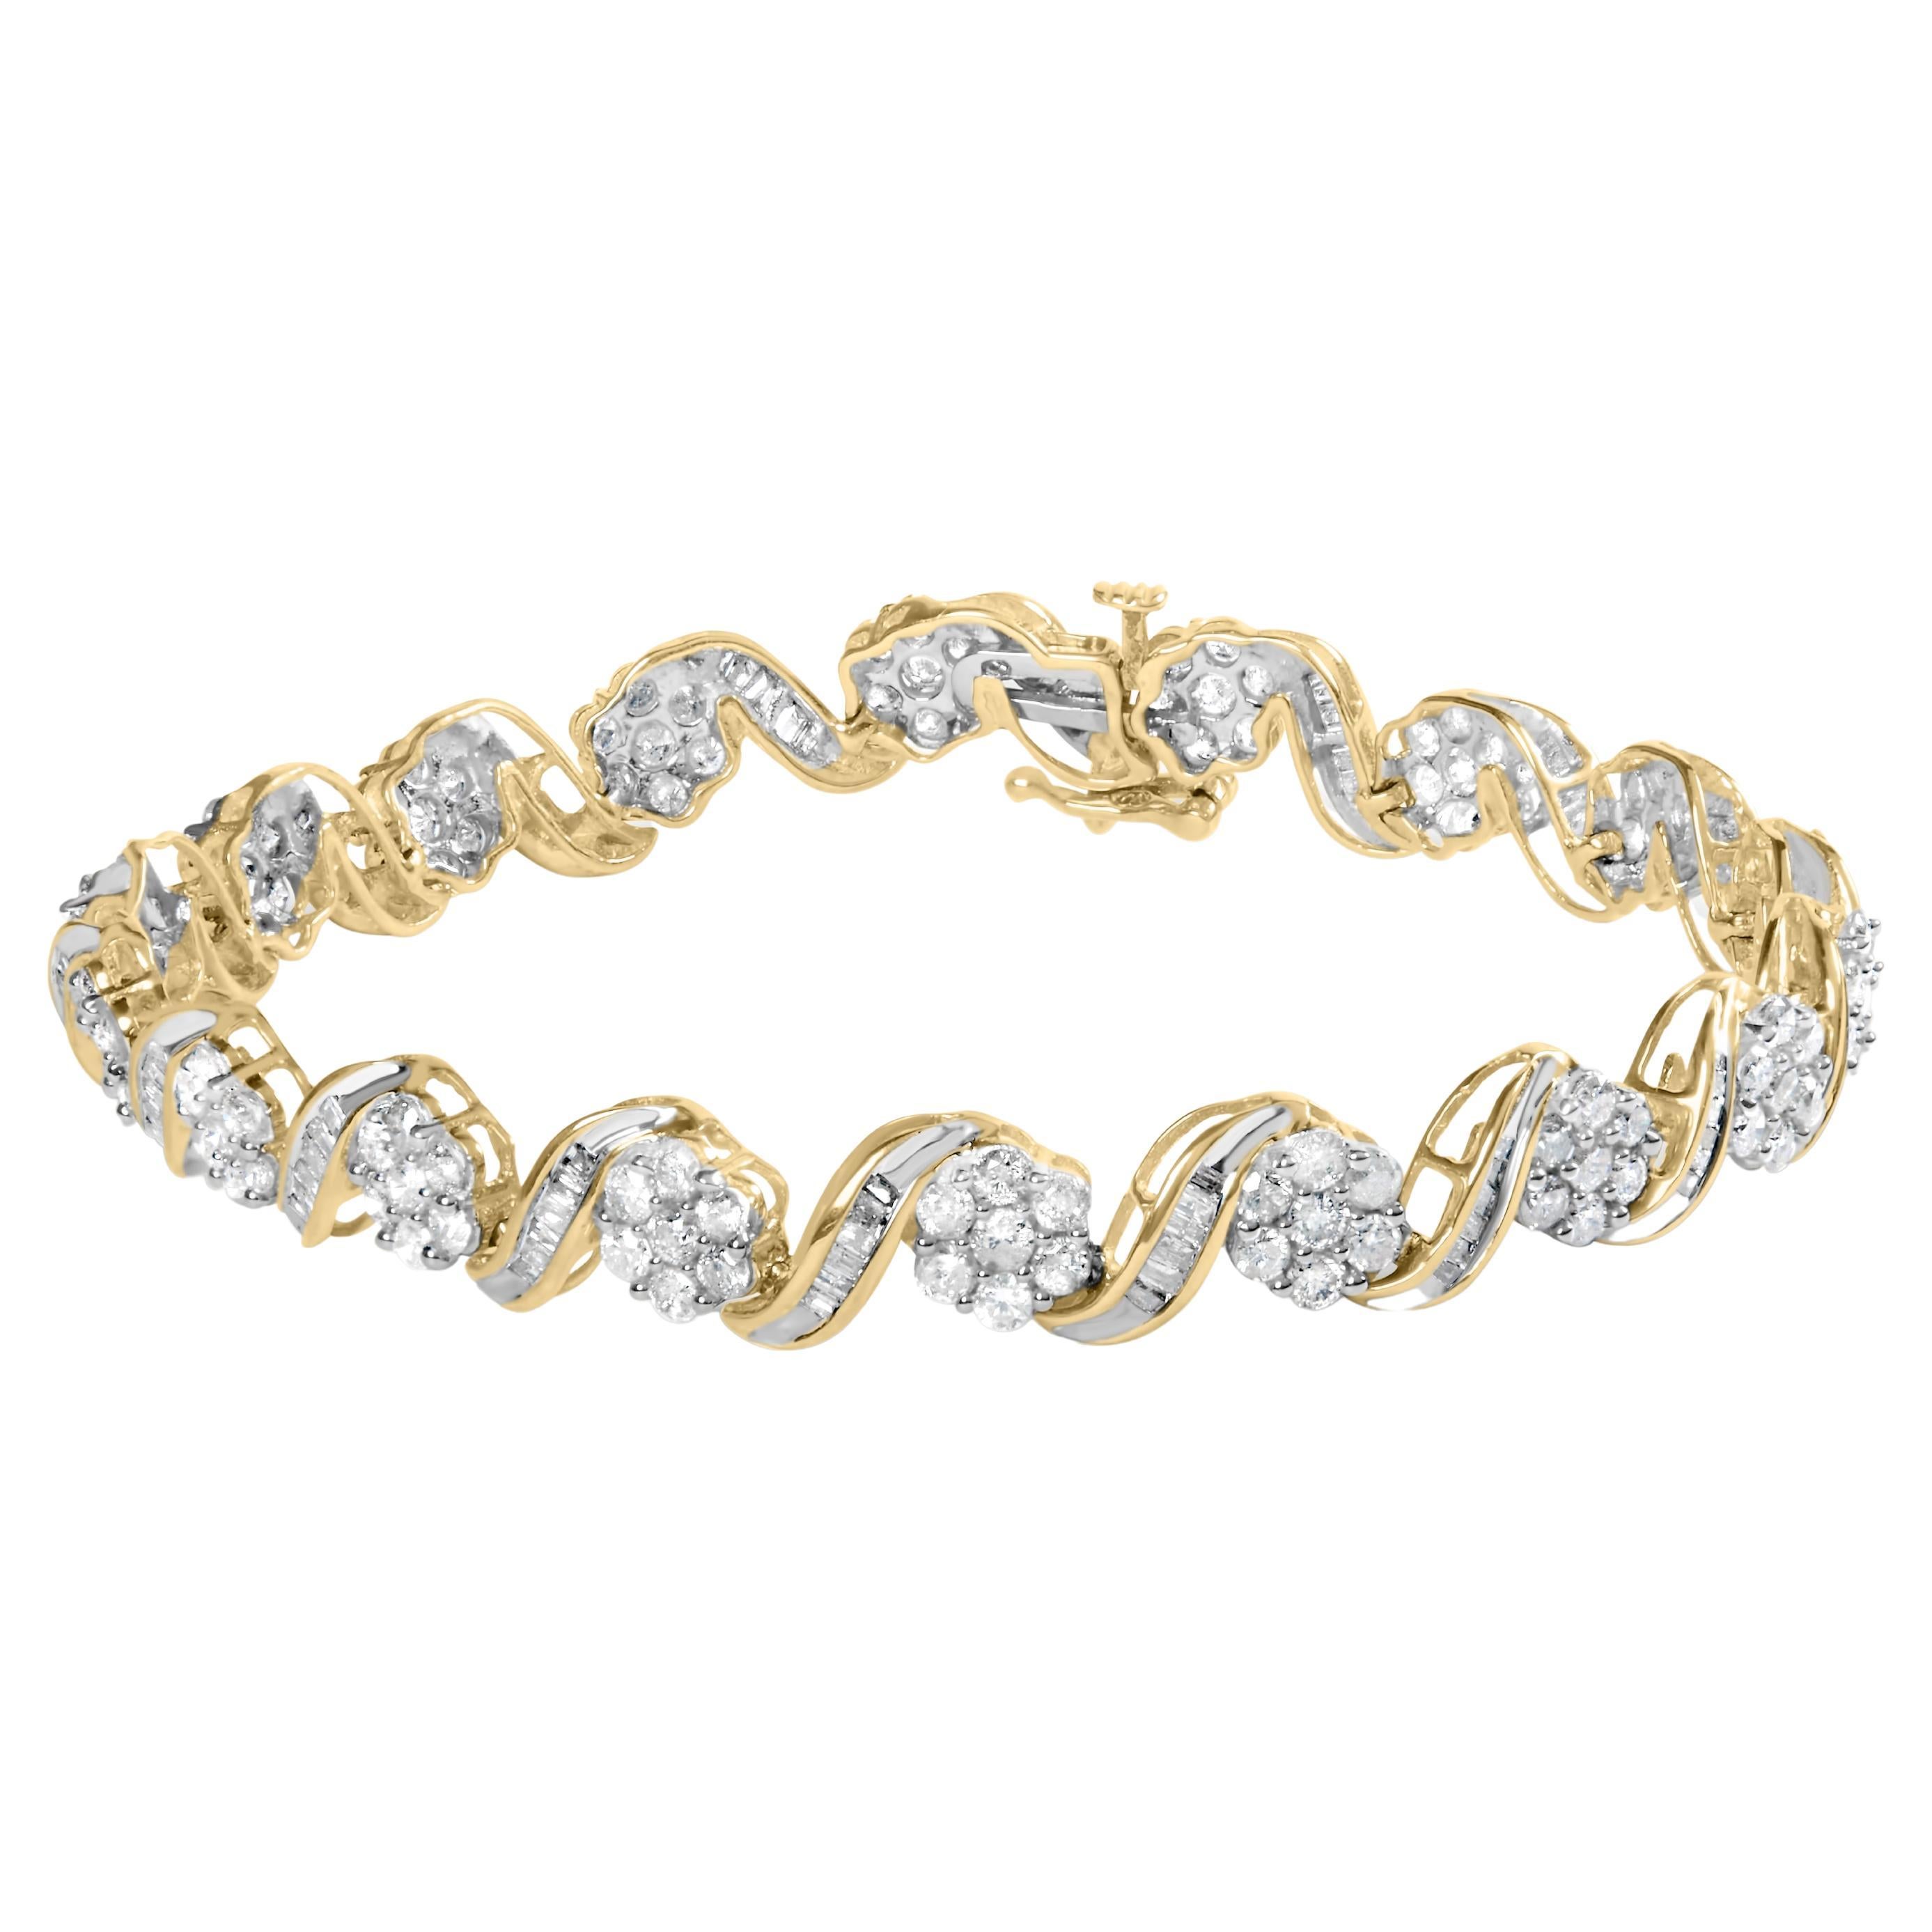 10K Yellow Gold 5.00 Carat Round-Cut & Baguette-Cut Diamond Floral Link Bracelet